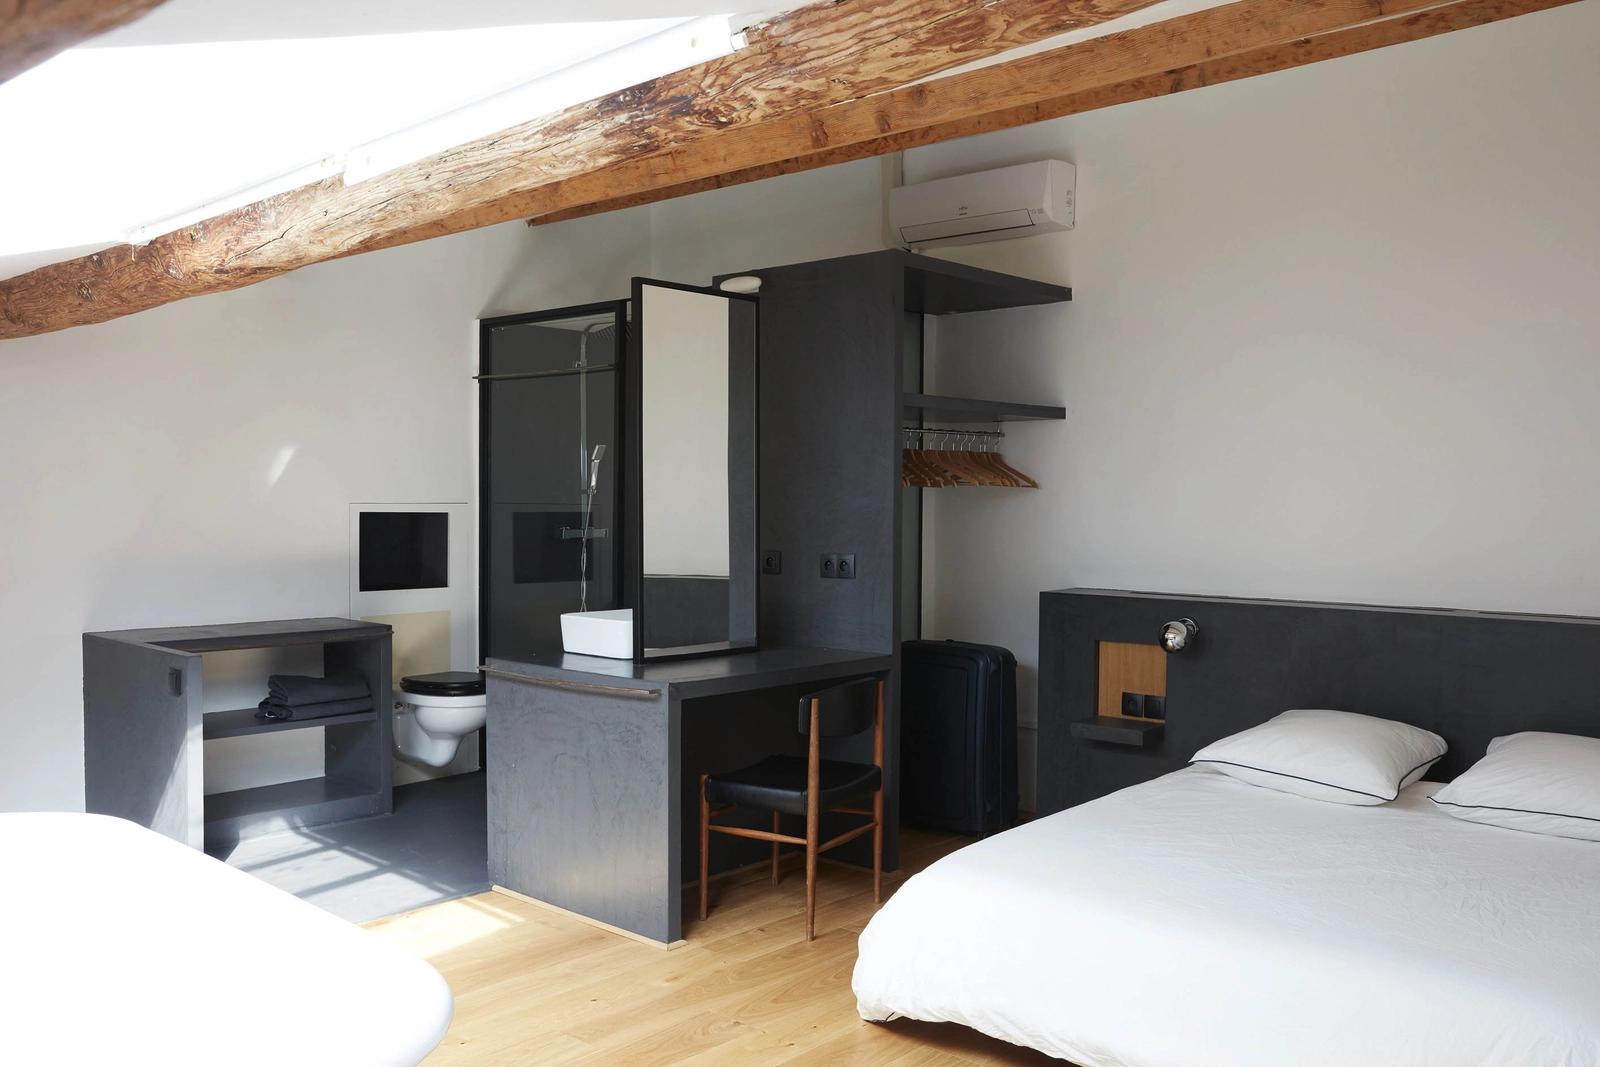 Dormitorio dentro Loft diseñado por un arquitecto en el puerto viejo - 5